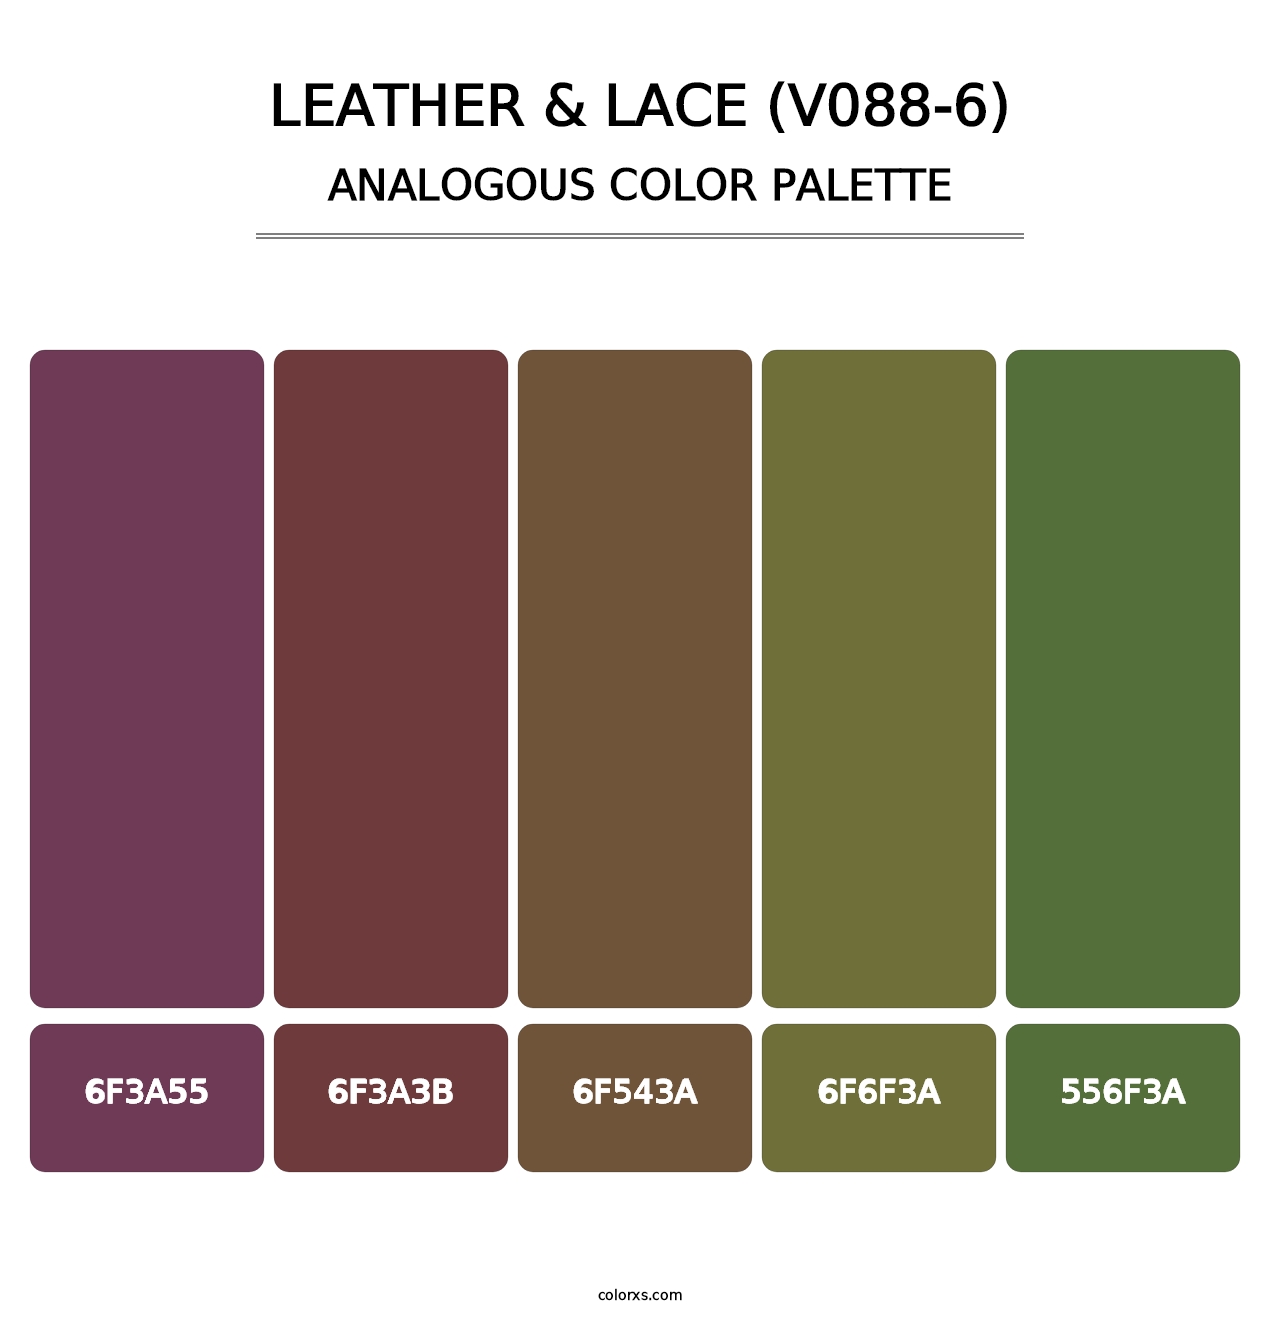 Leather & Lace (V088-6) - Analogous Color Palette